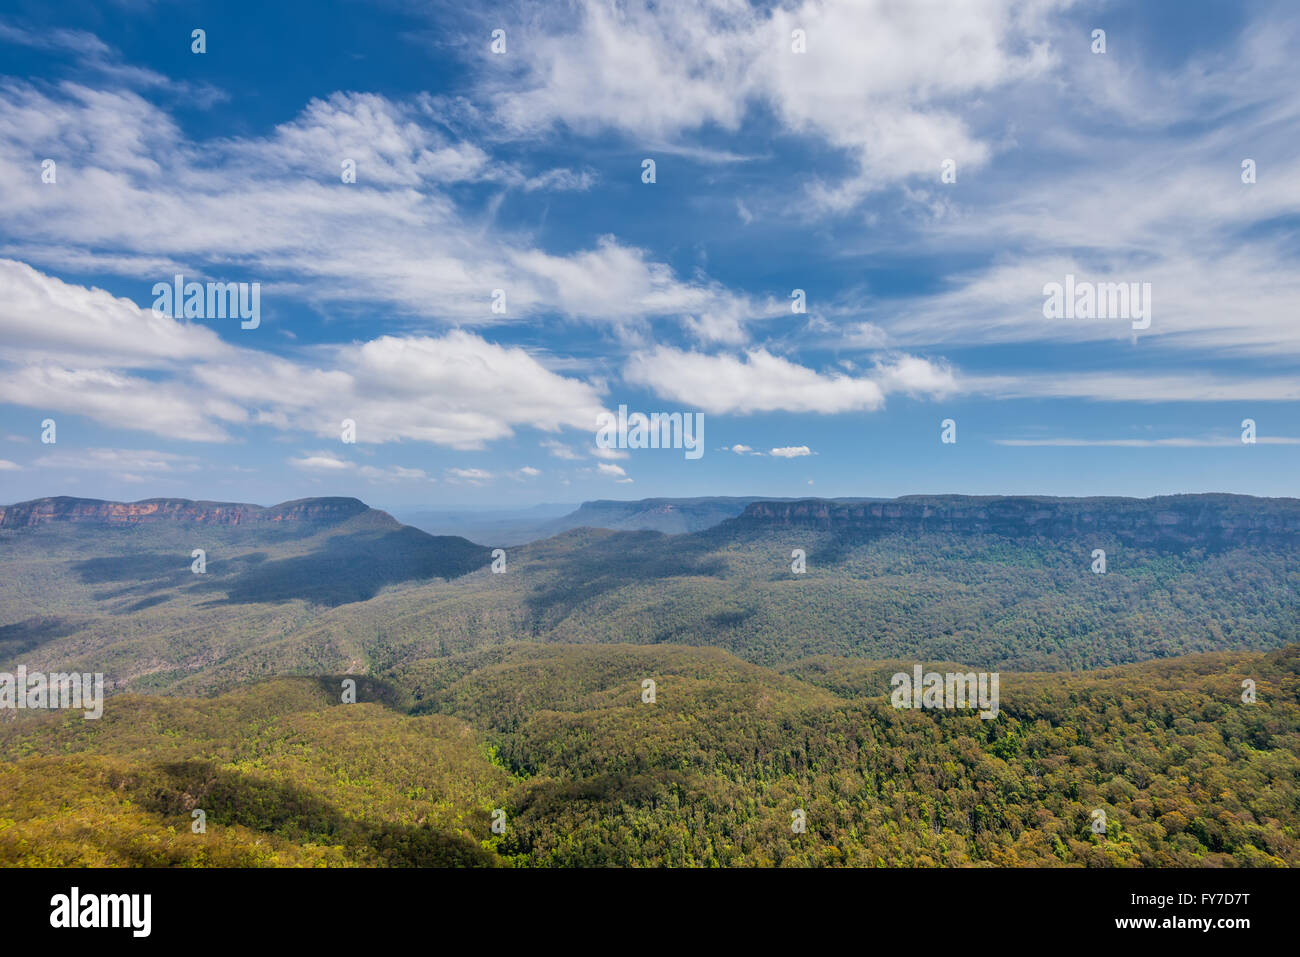 La vue panoramique sur la montagne bleue en Nouvelle Galles du Sud, Australie Banque D'Images